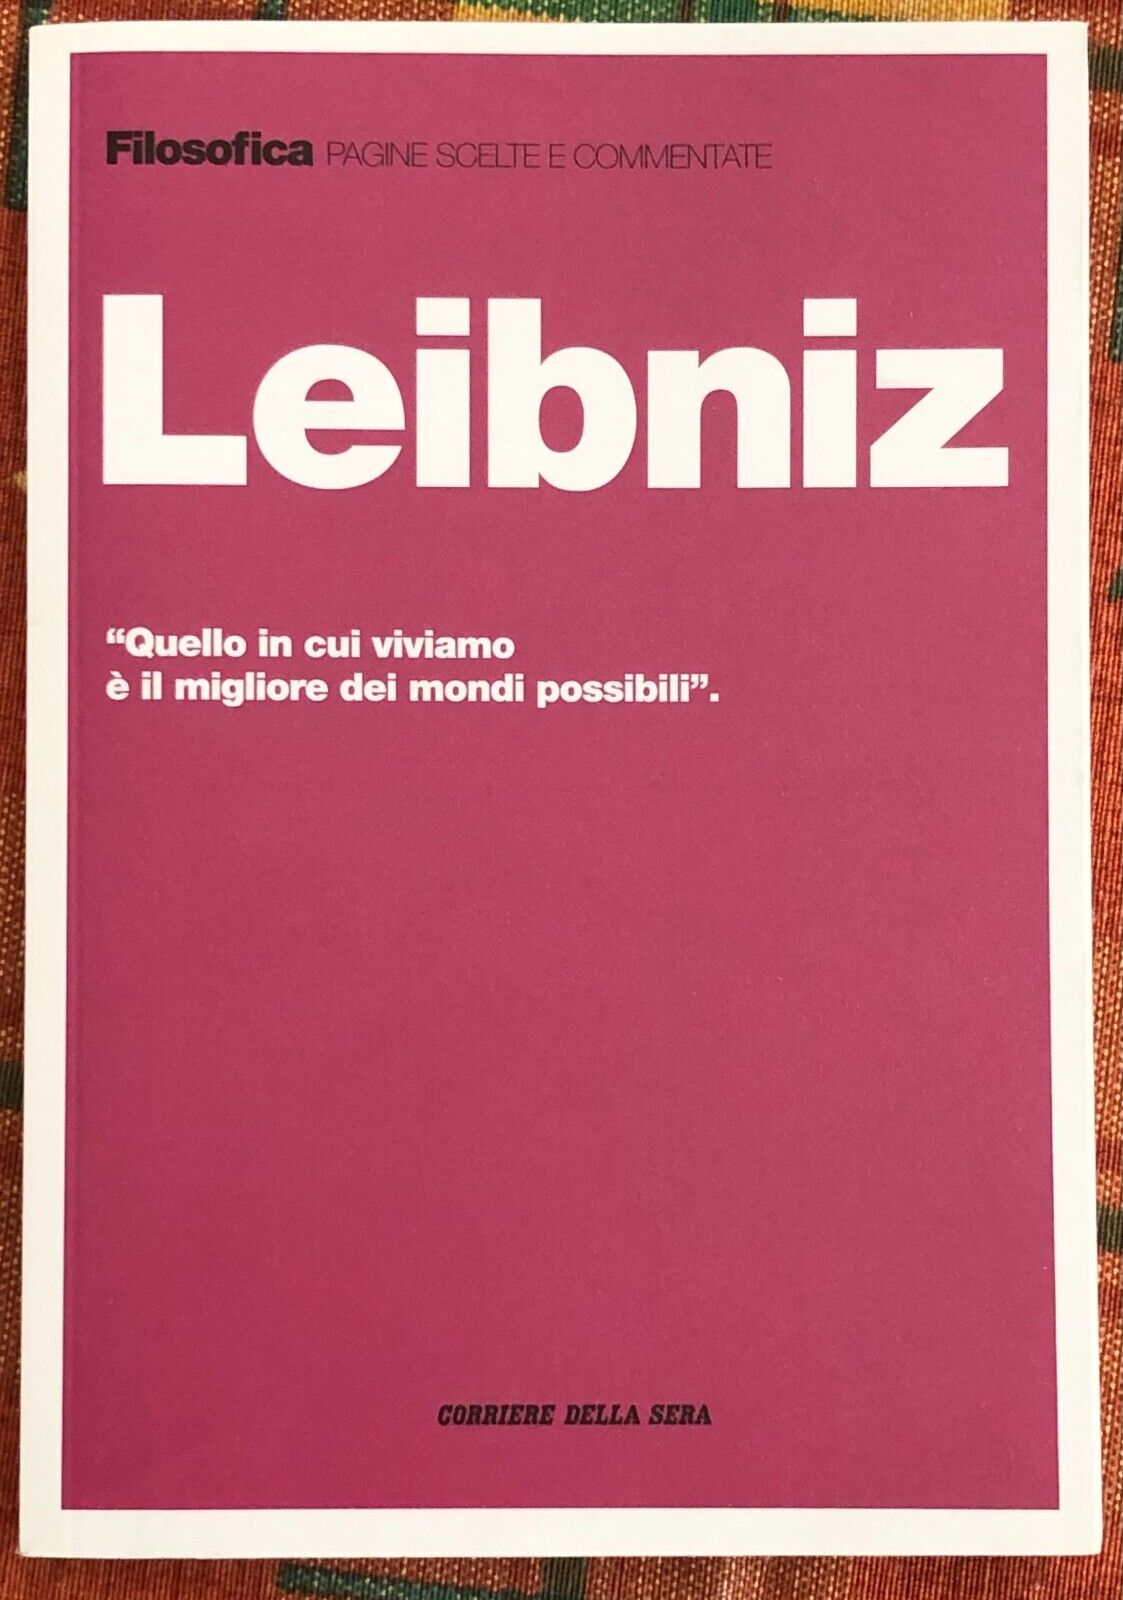 Filosofica. Pagine scelte e commentate n. 18 - Leibniz di Aa.vv., 2021, Corri